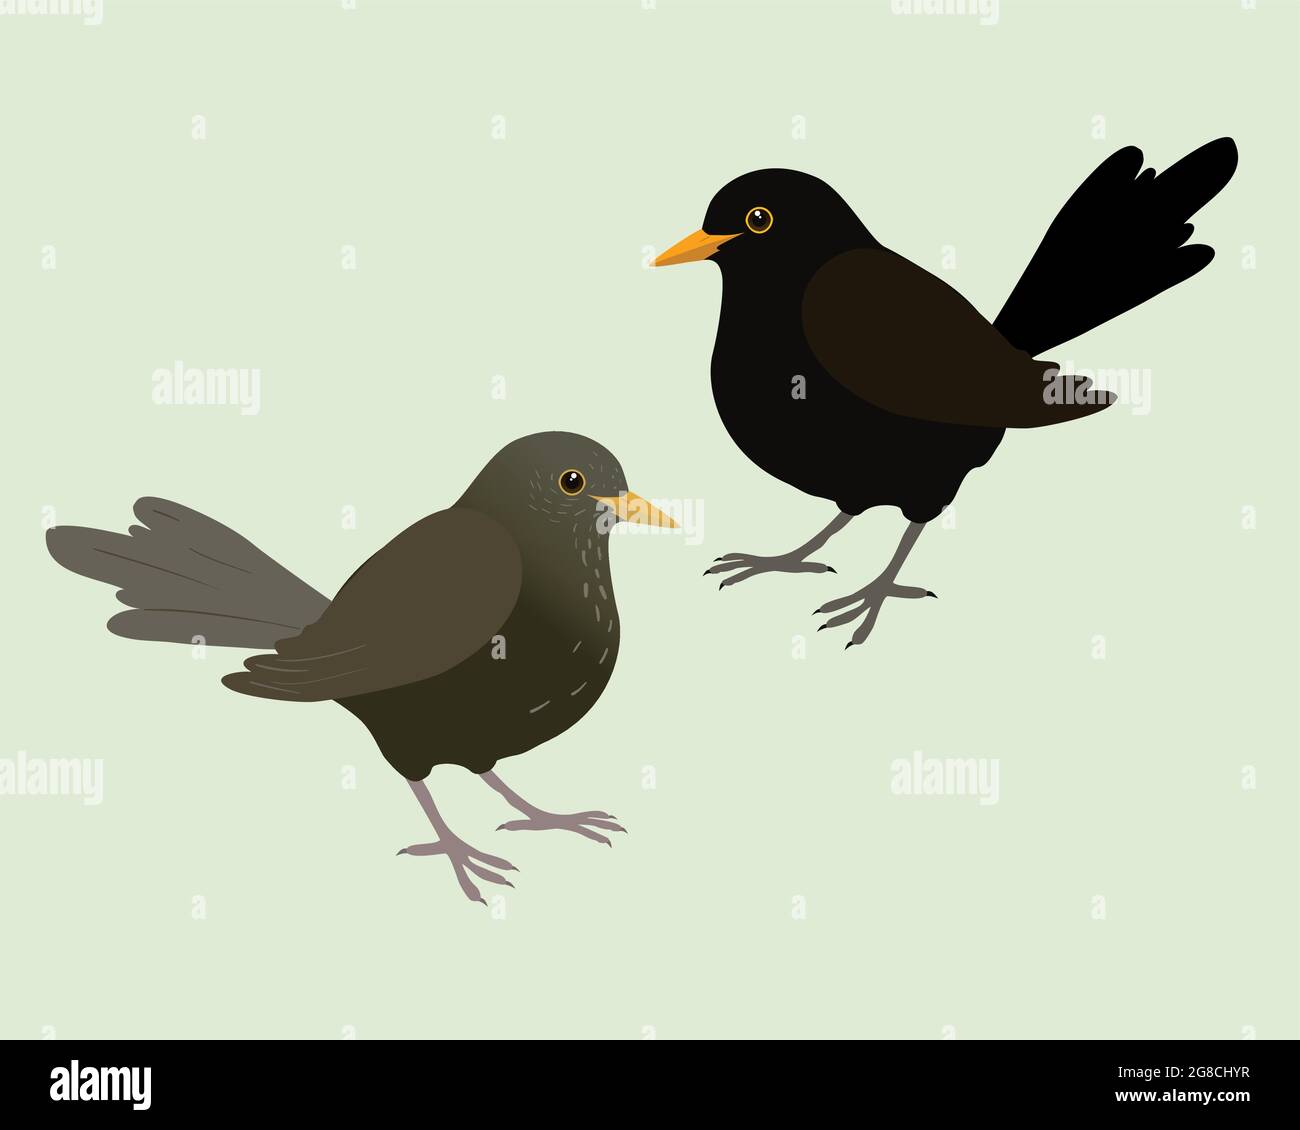 Eine Illustration von zwei Amseln. Es ist ein männlicher und ein weiblicher Vogel und der Hintergrund ist hellgrün. Die Vögel werden ausgeschnitten. Stock Vektor